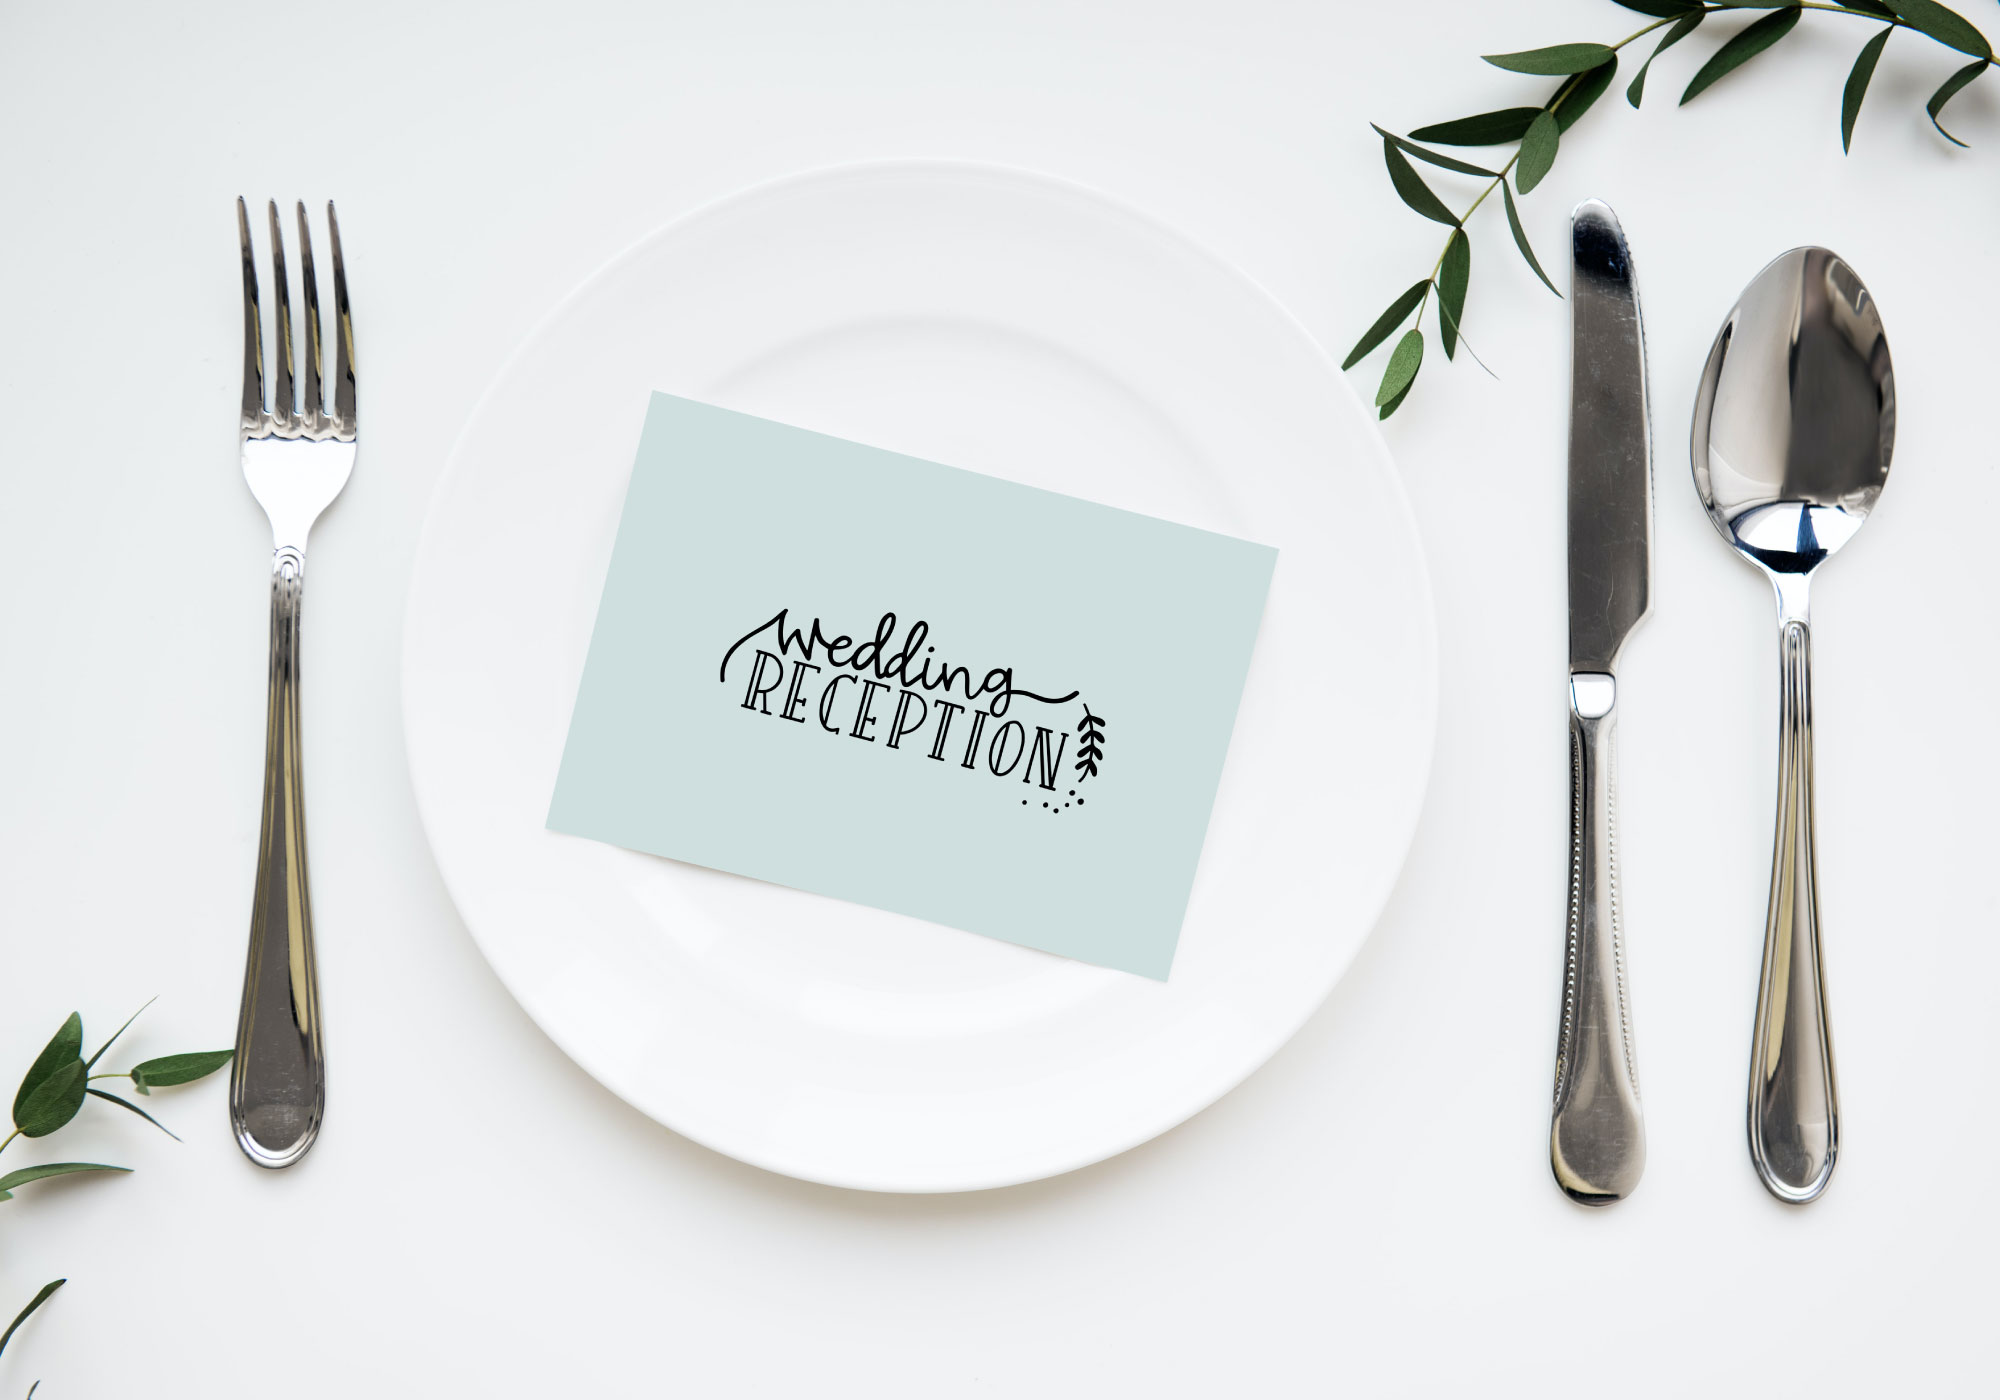 Free Wedding Reception SVG Cut File